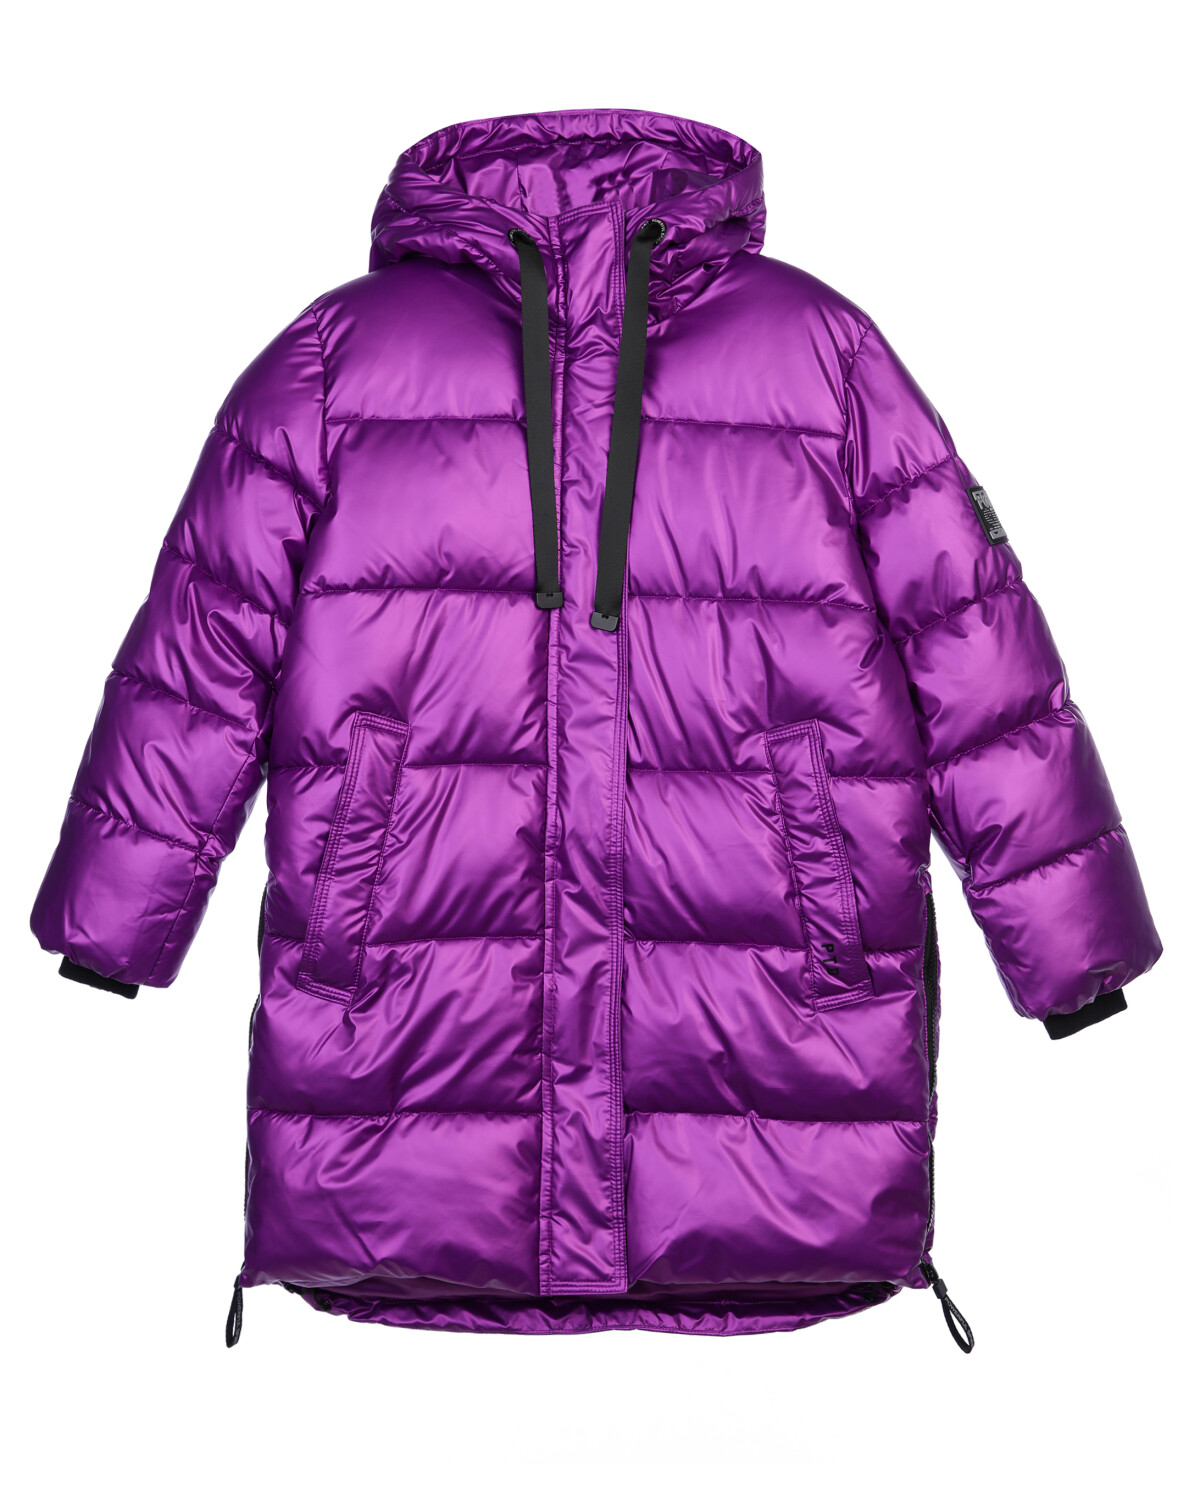 Куртка текстильная с полиуретановым покрытием для девочек PlayToday, фиолетовый, 128